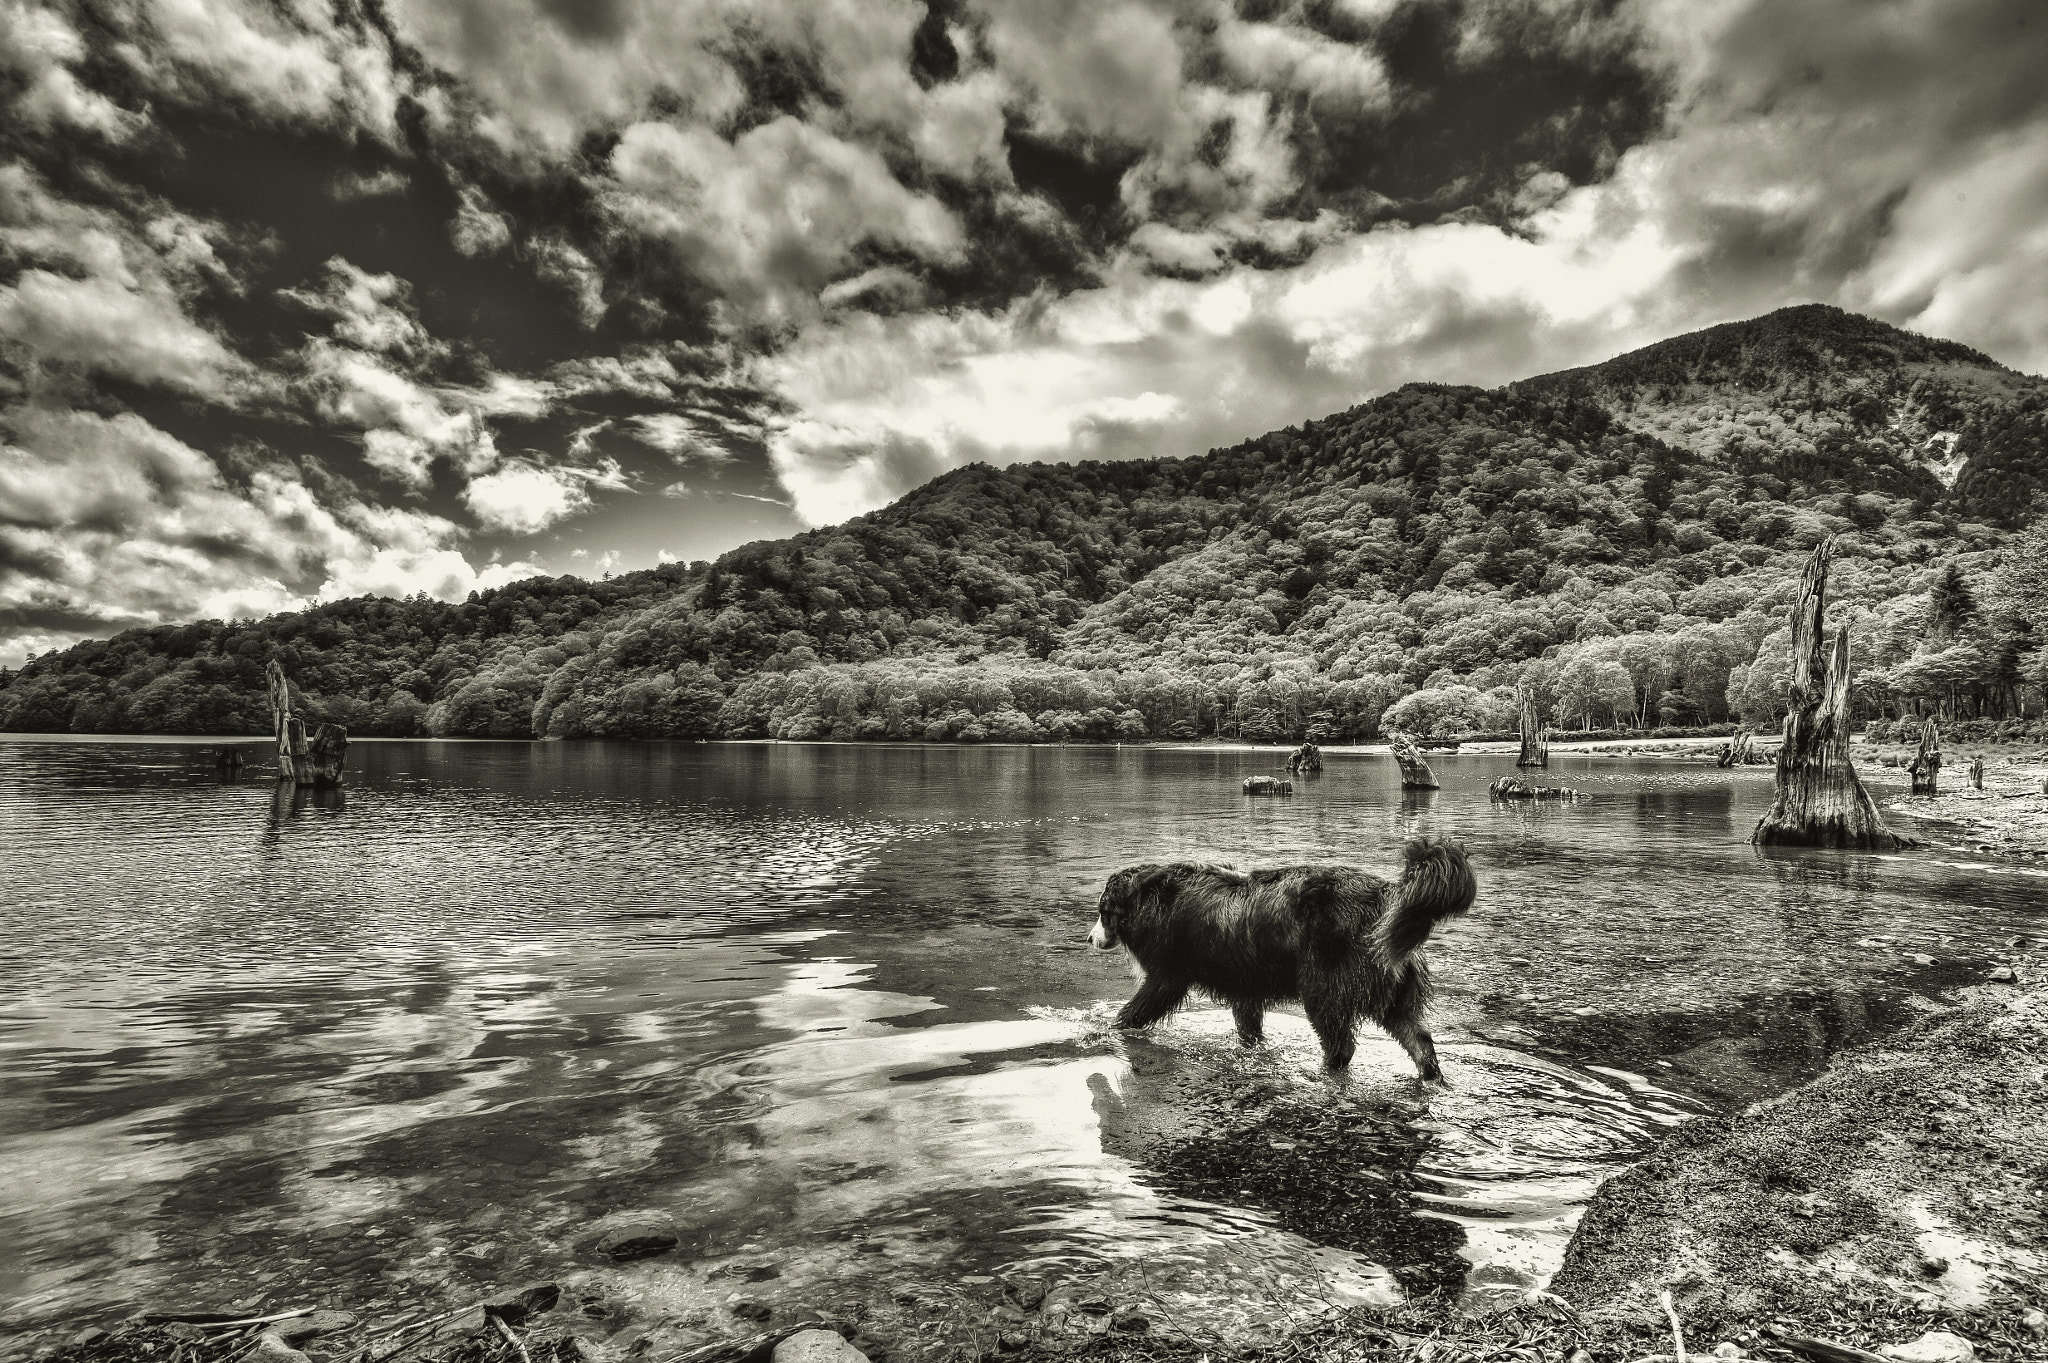 Nikon D4 + Nikon AF-S Nikkor 18-35mm F3.5-4.5G ED sample photo. Dog in lake photography